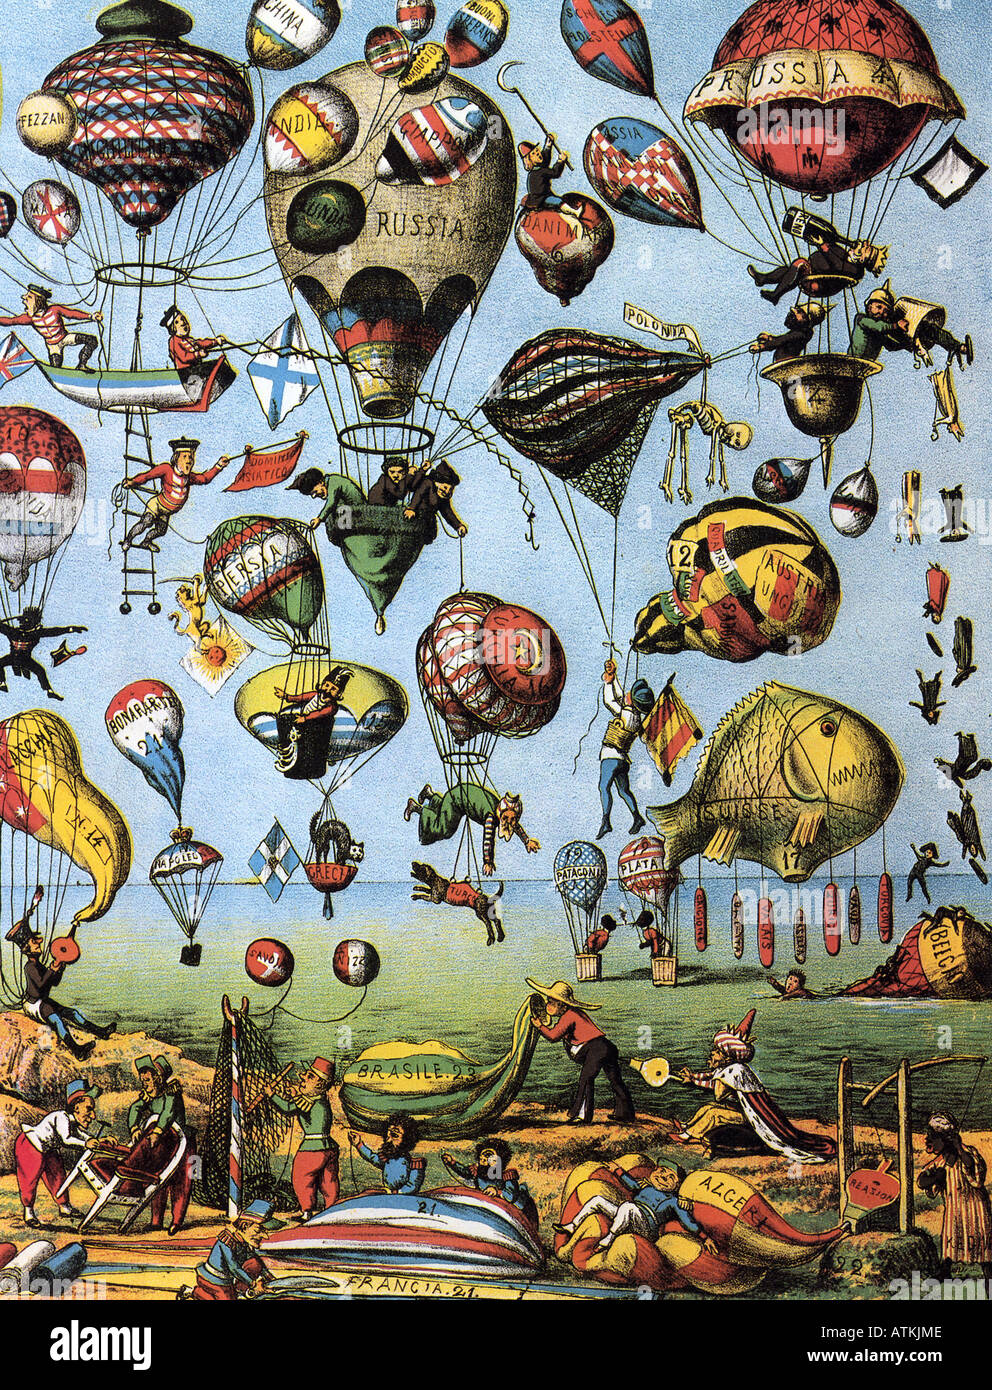 BALLONFAHREN eine italienische Karikatur von 1875 zeigt die weltweite Faszination Ballonfahren Stockfoto